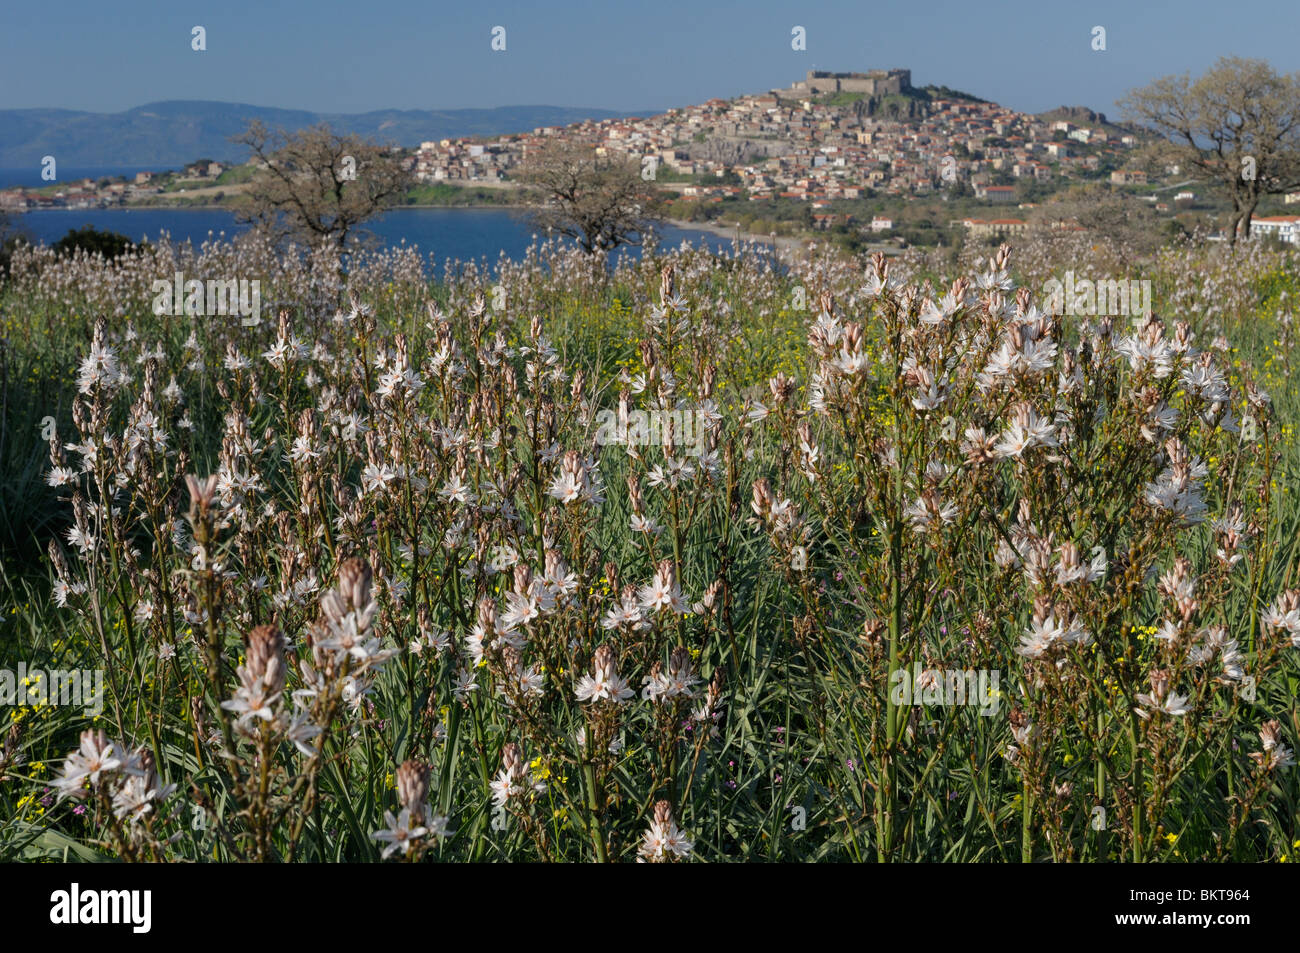 velden van affodil (elyzeesche velden) met molivos op achtergrond; asphodel fields with molivos on the background Stock Photo